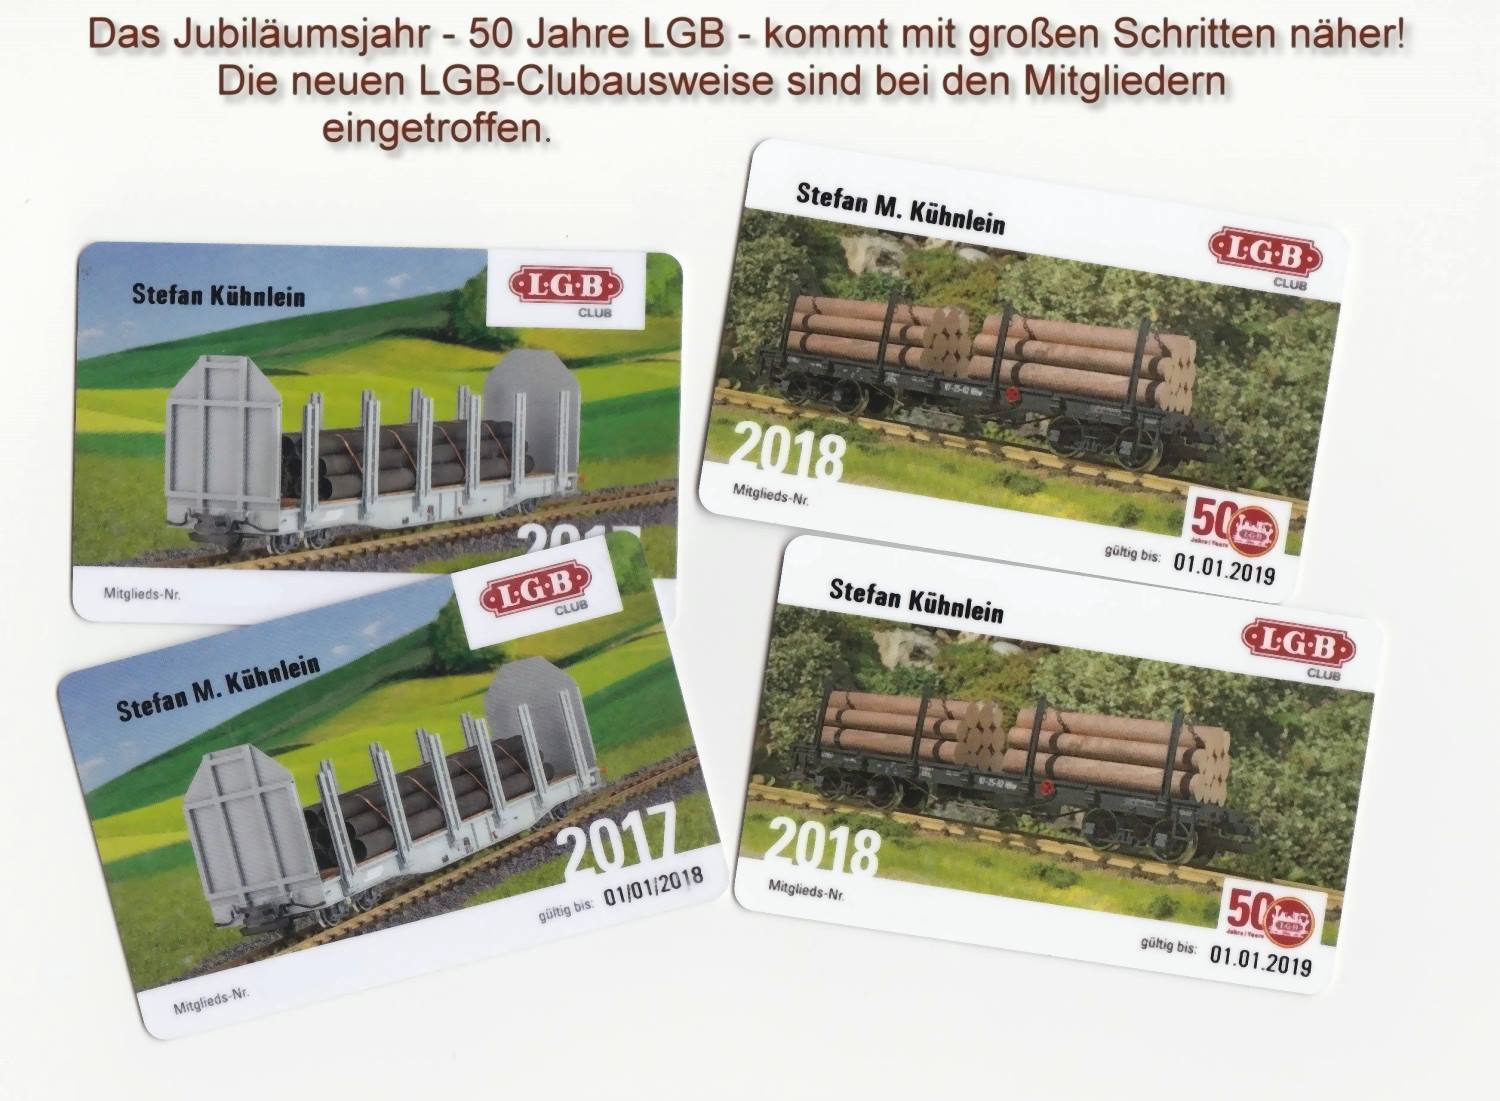 Das Jubilumsjahr 2018 - 50 Jahre LGB - kndigte sich schon durch die Ausstellung der Familie Franke in Marienberg an. Nun ist die Depesche bereits ausgeliefert und die LGB - Clubmitglieder haben Ihre neuen Ausweise fr 2018 erhalten. Mit dabei das LOGO zum 50jhrigen LGB Jubilum.